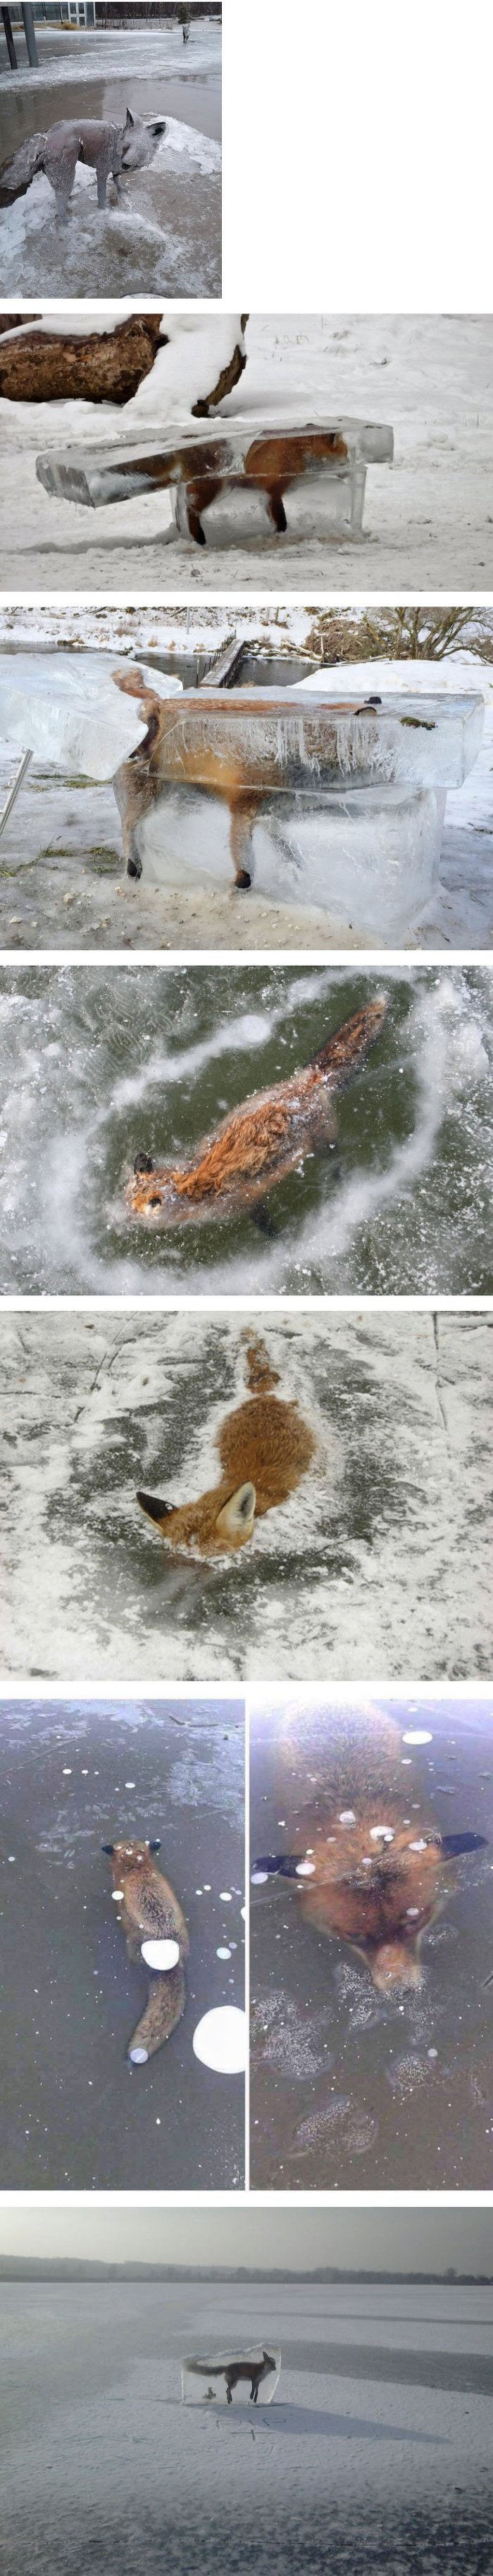 러시아에서 촬영된 얼음에 빠져 죽은 여우 사진